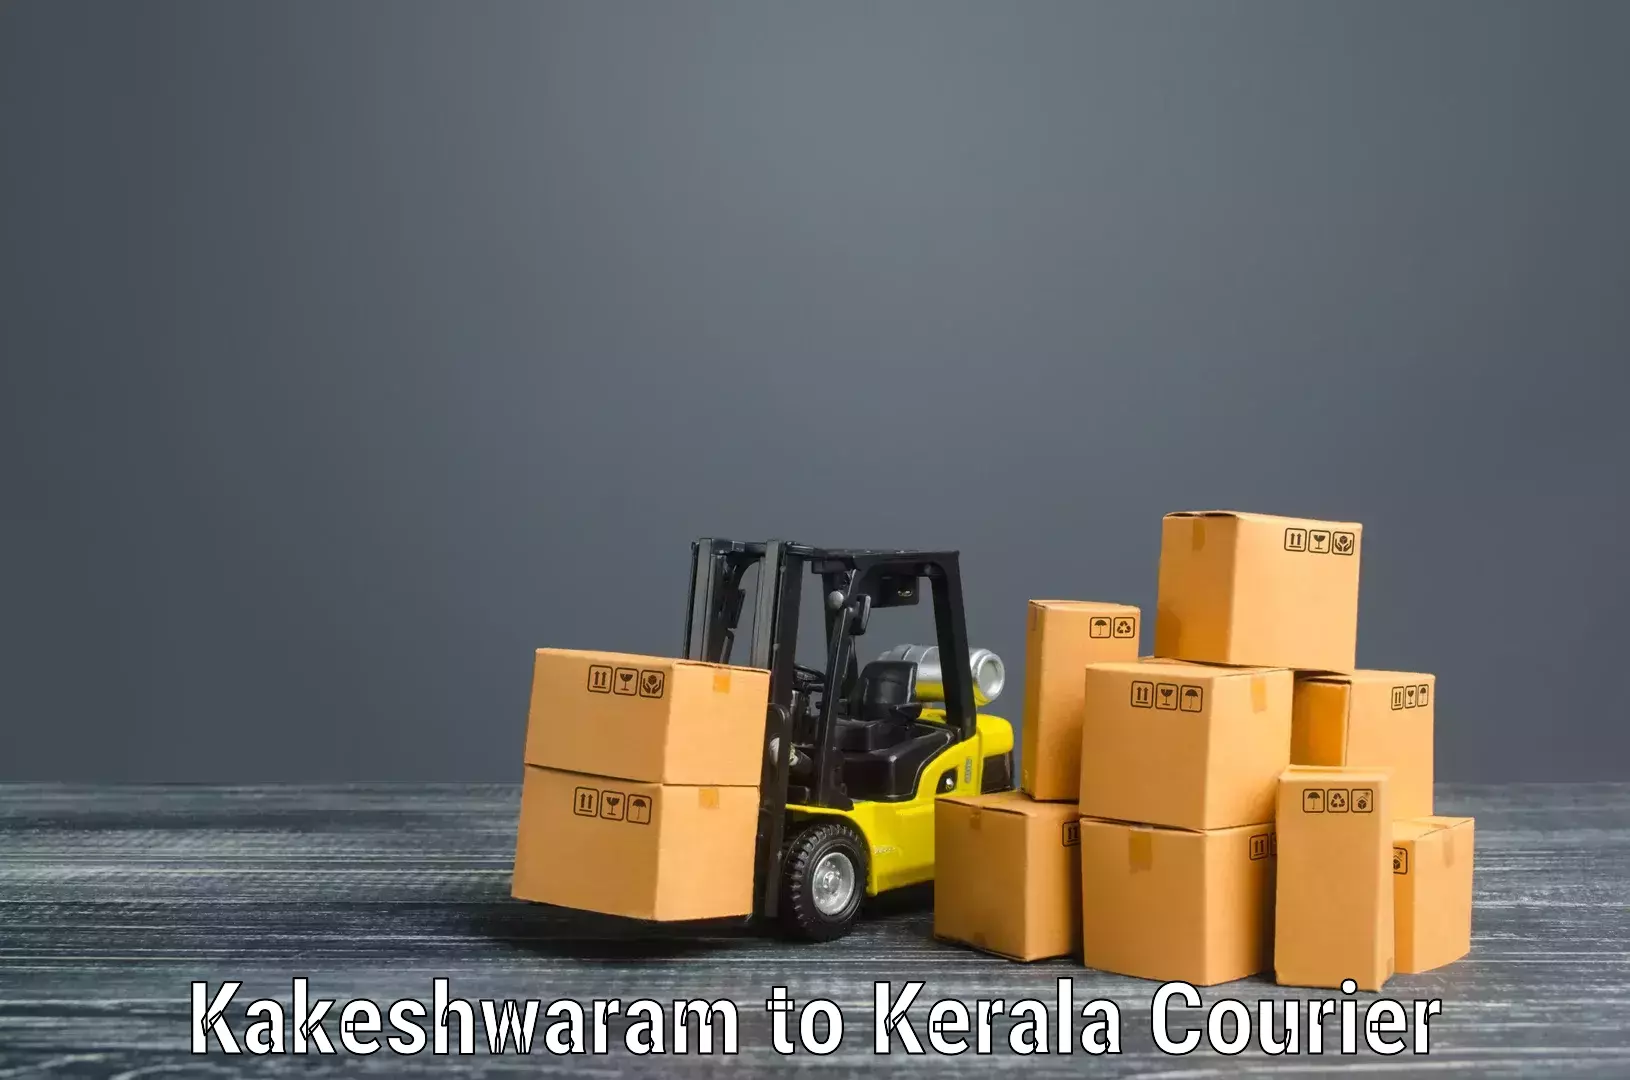 Furniture transport service Kakeshwaram to Kalpetta